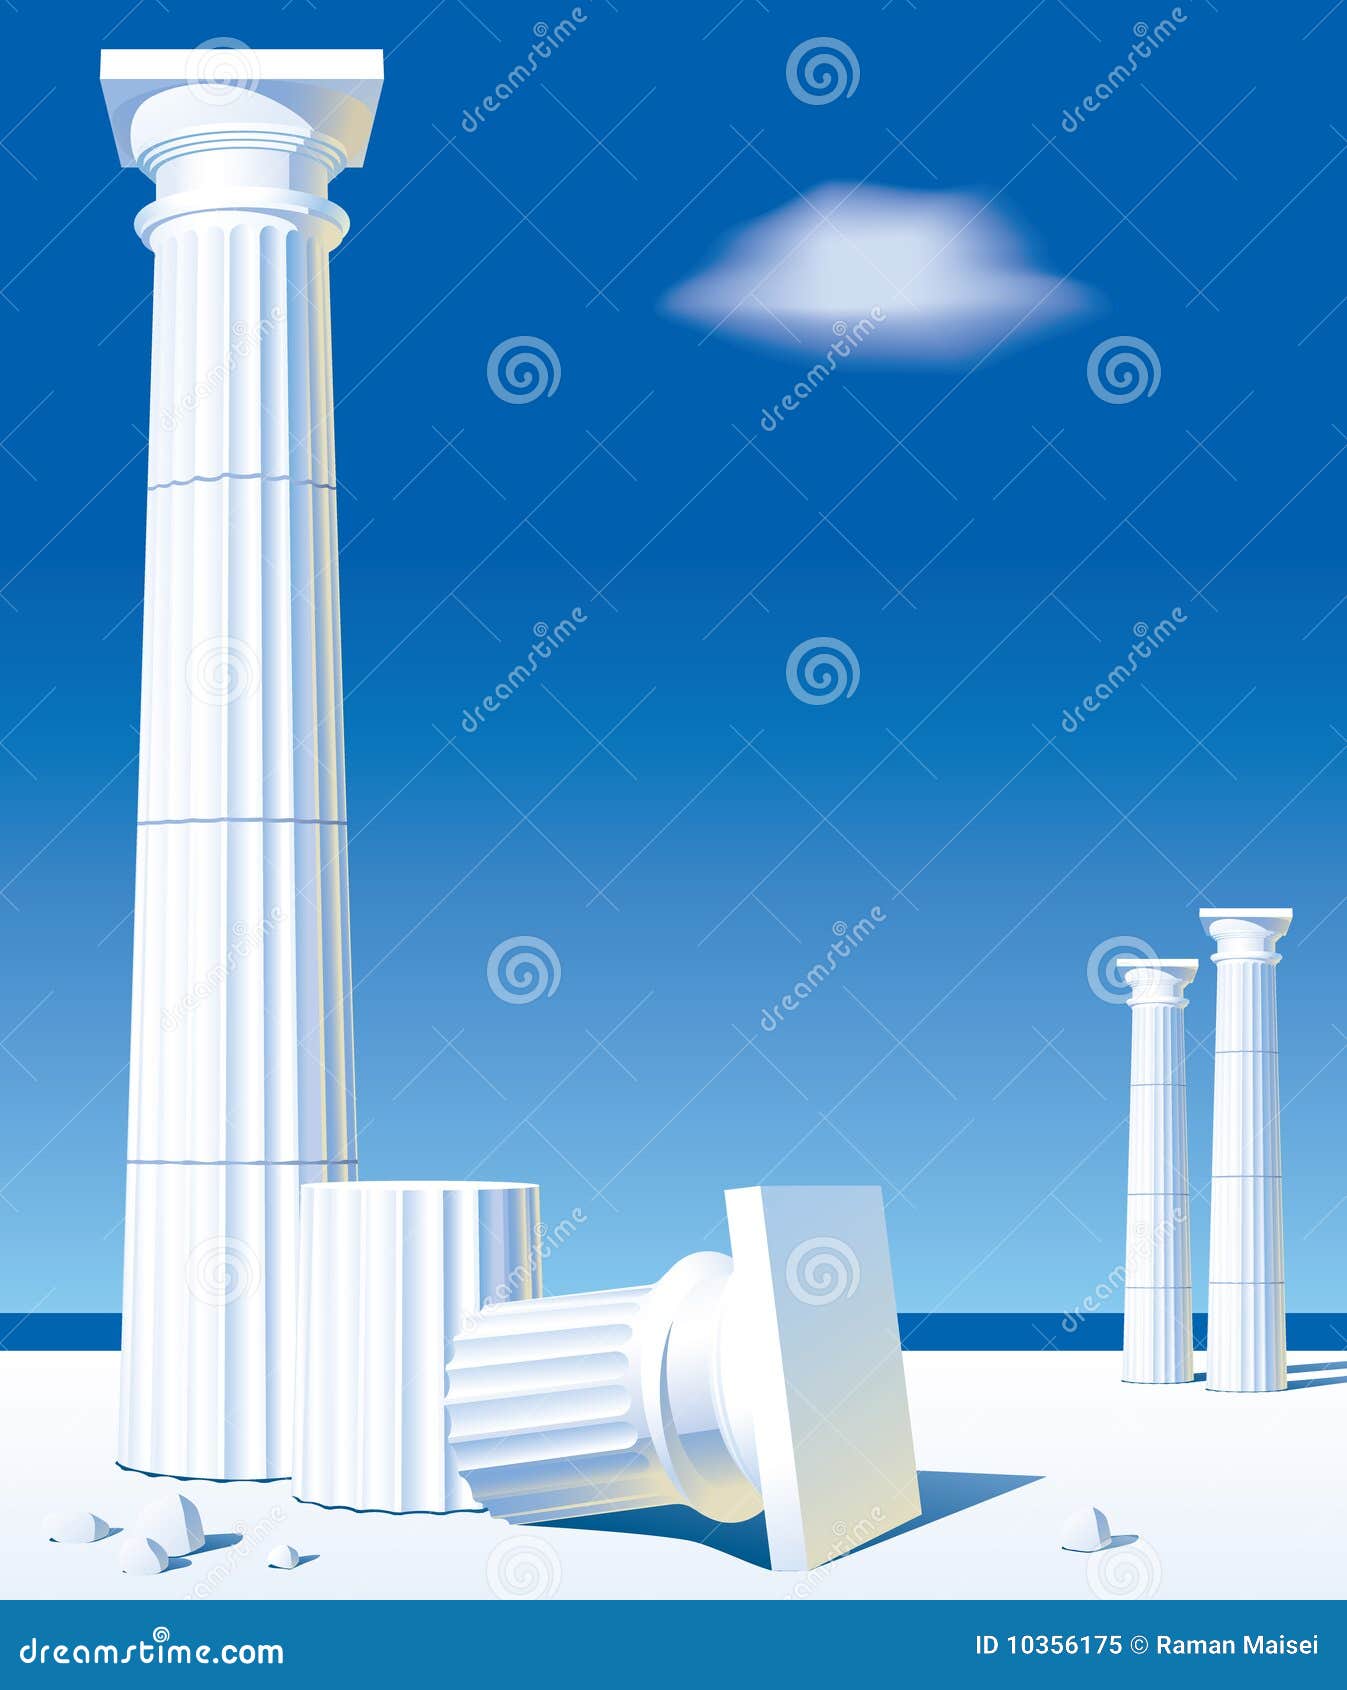 antic columns